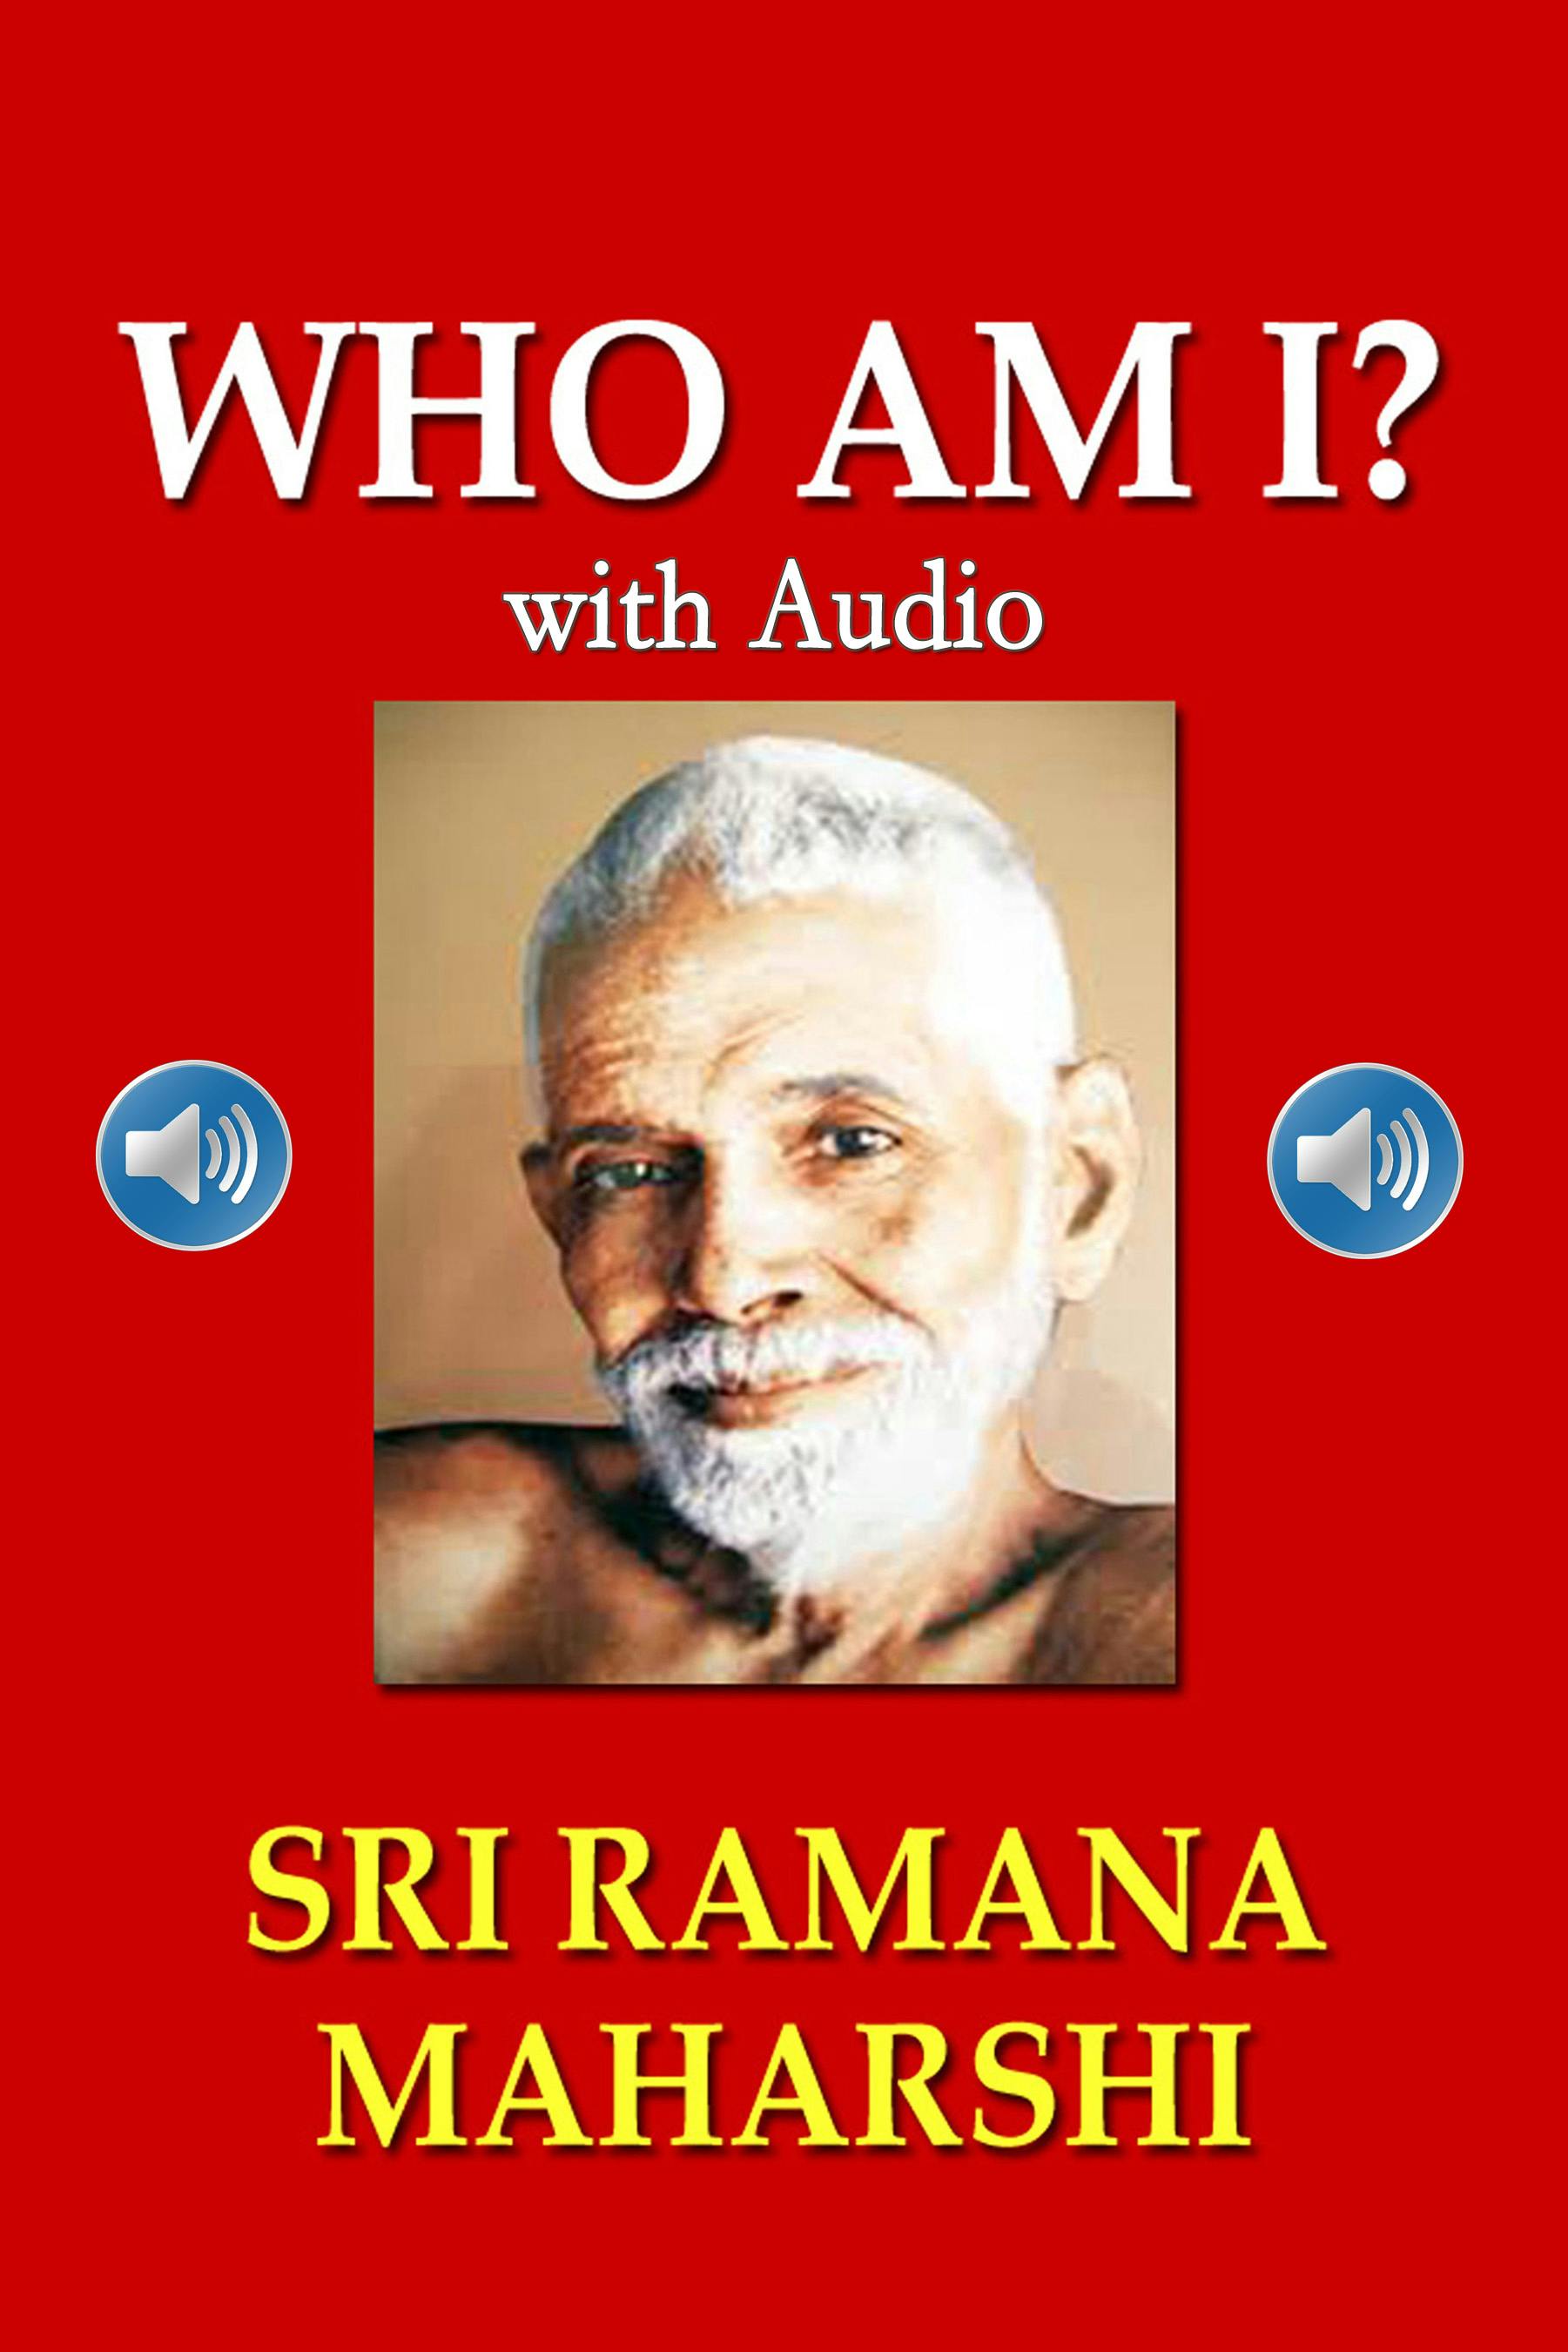 Who Am I? with Audio - Sri Ramana Maharshi